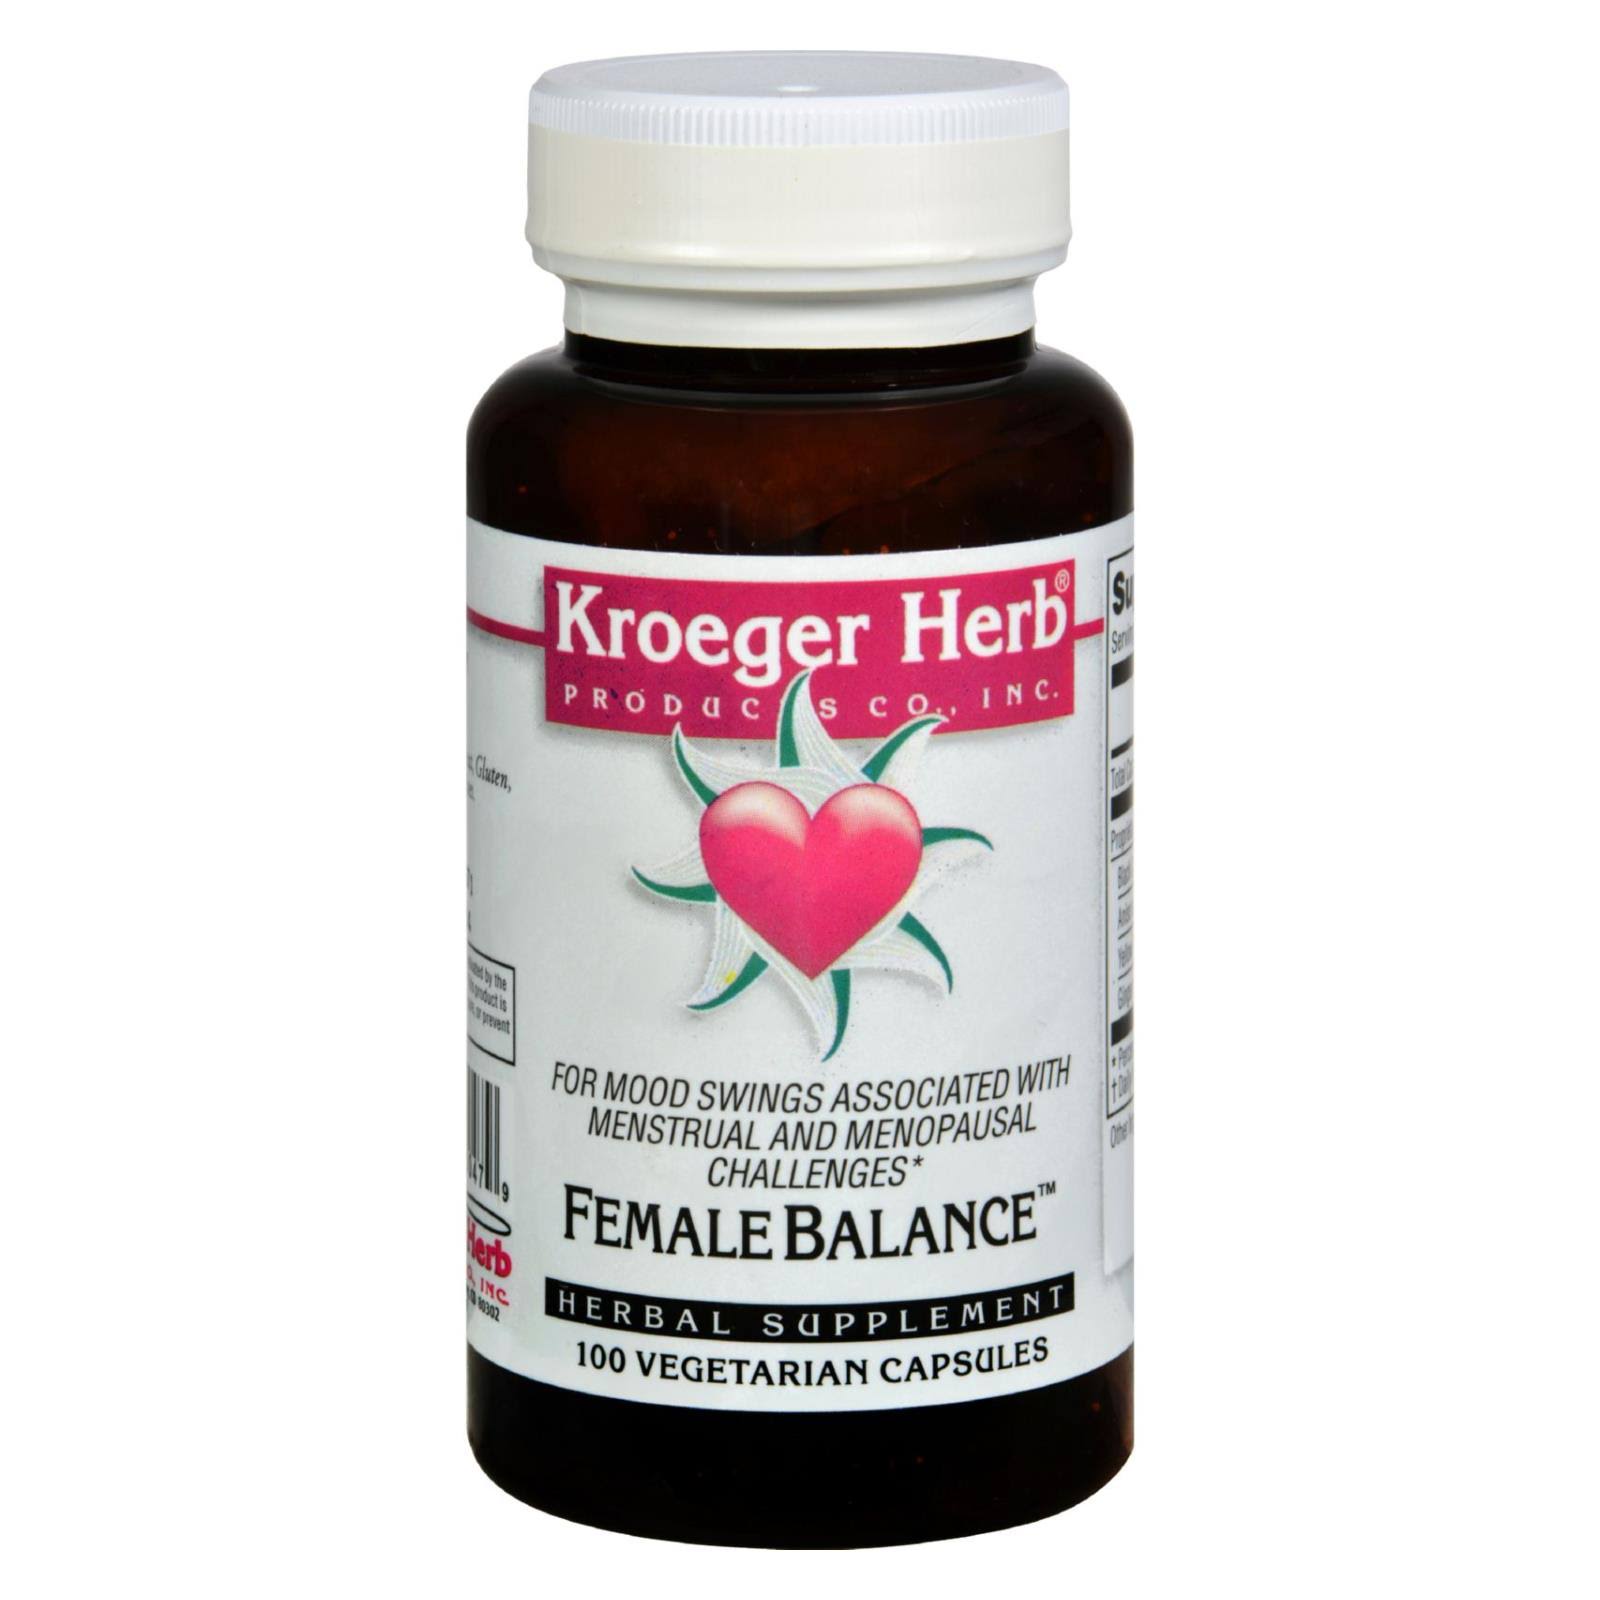 Kroeger Herb Female Balance Herbal Supplement - 100 Capsule